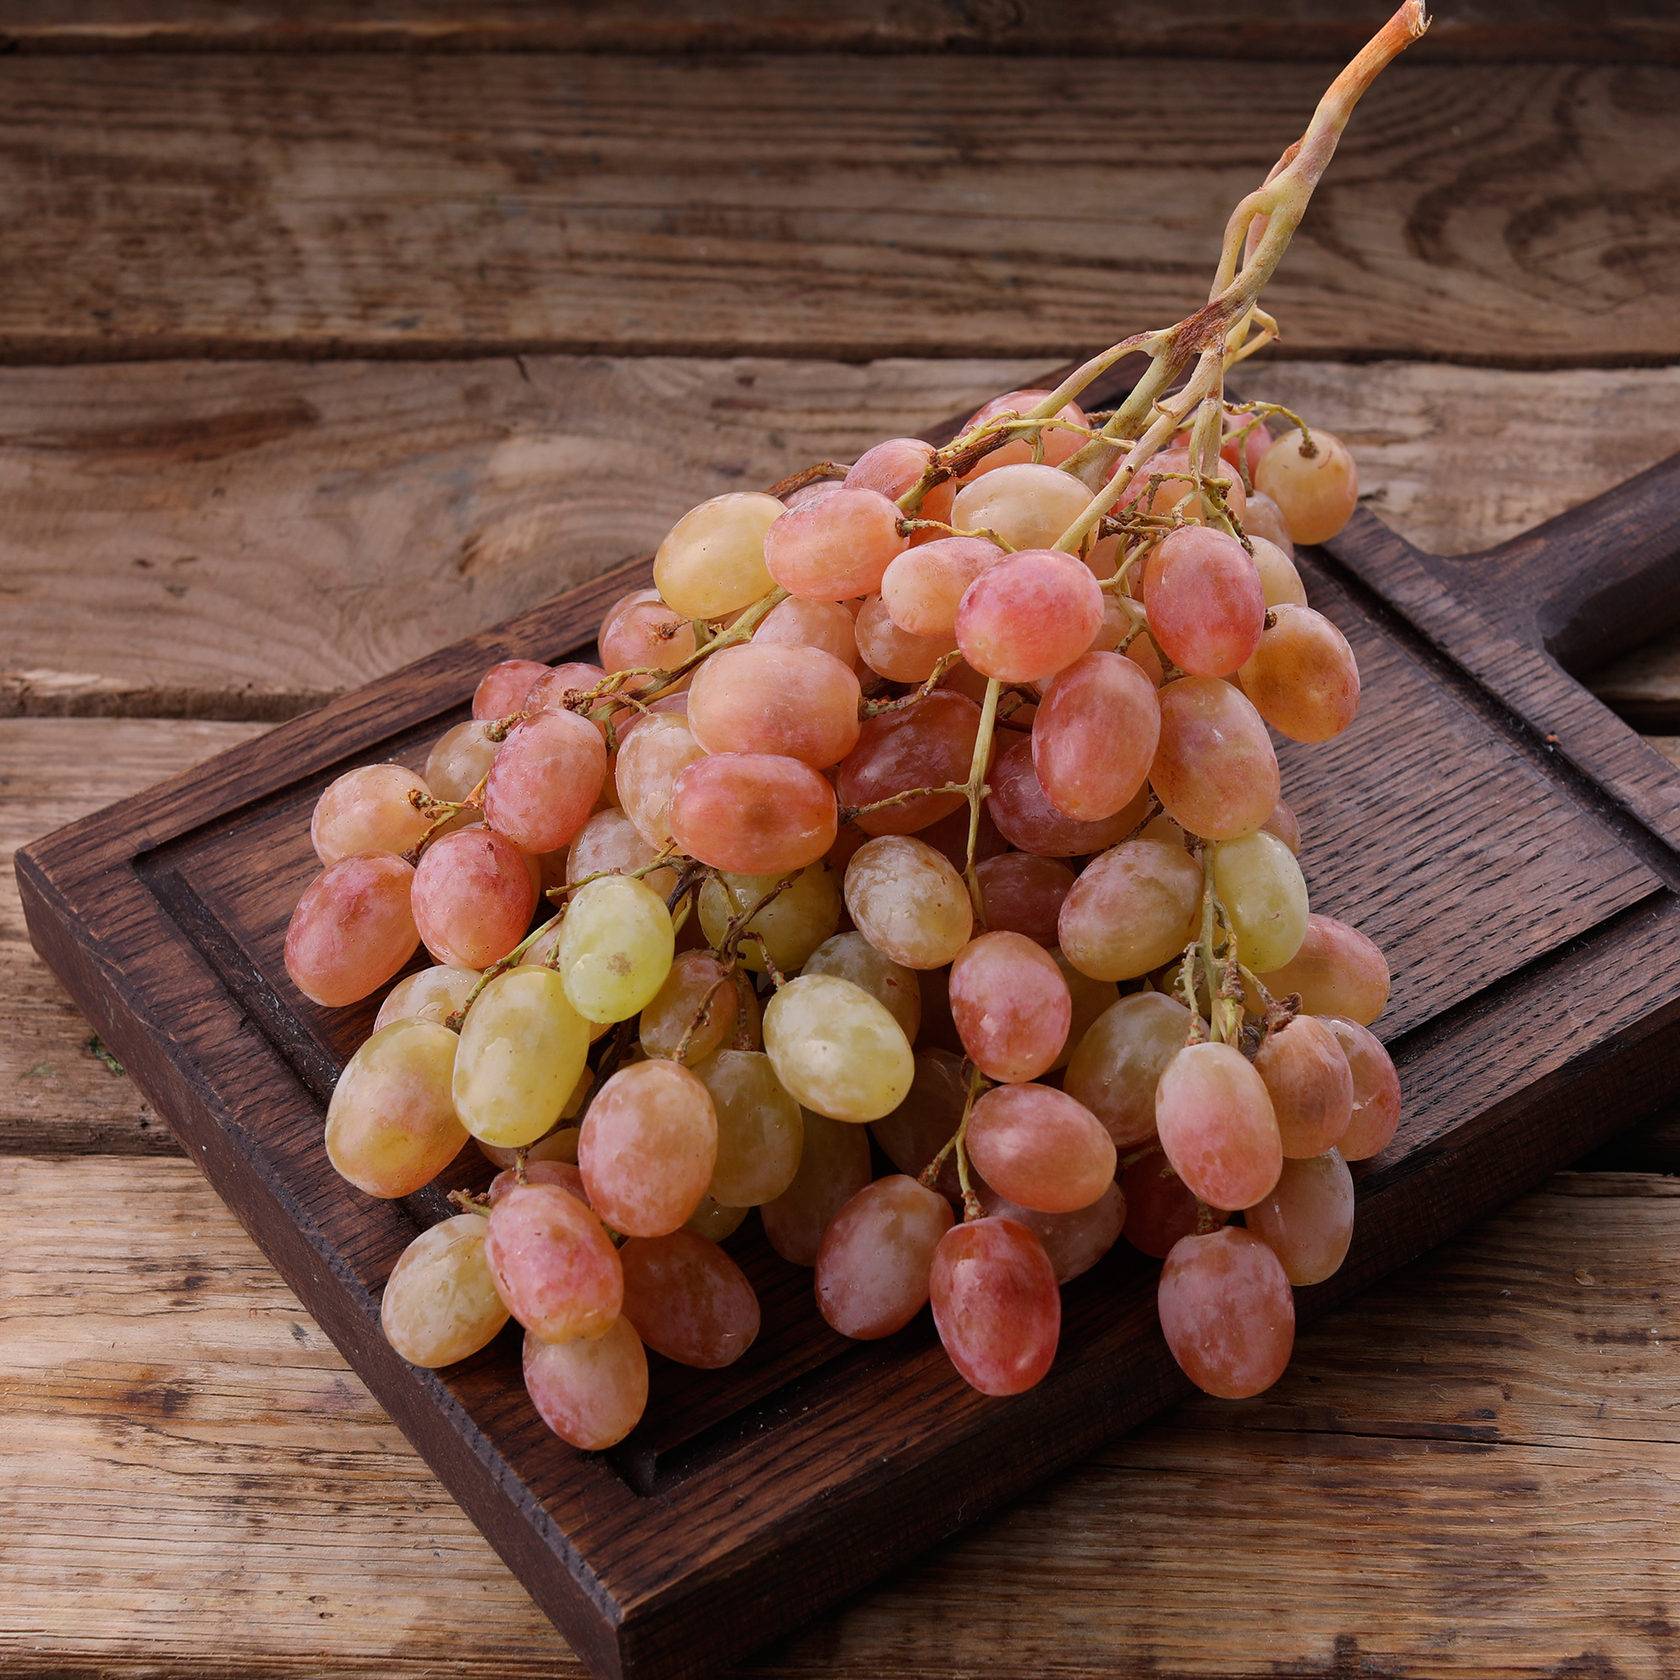 Виноград тайфи описание сорта, где растет, польза и вред